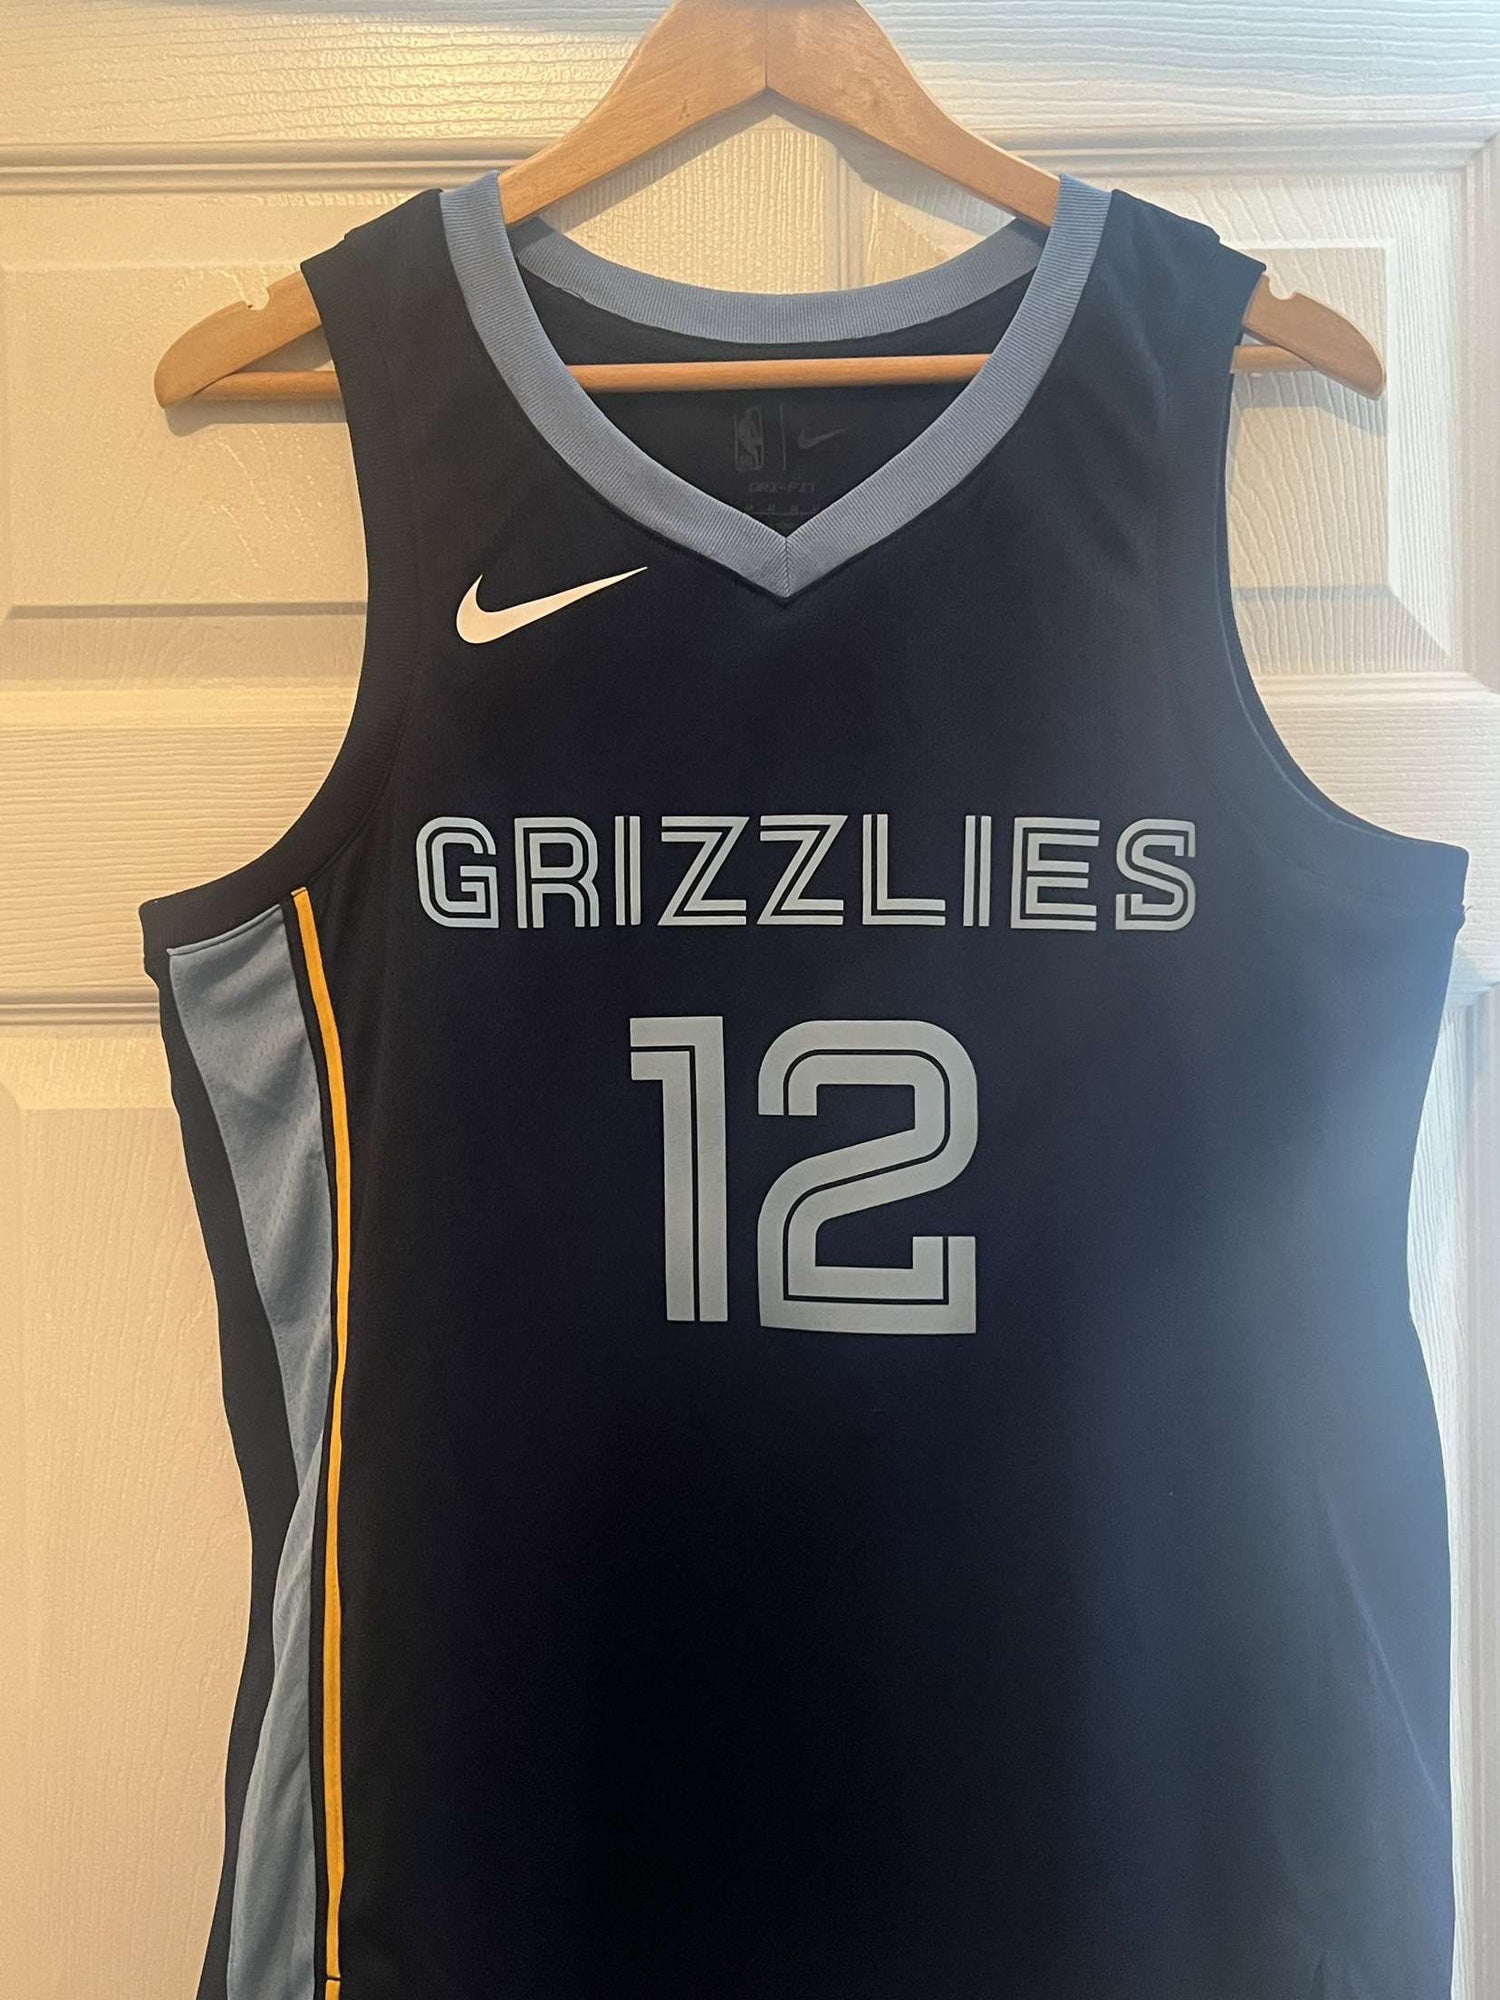 Memphis Grizzlies Association Edition 2022/23 Nike Dri-Fit NBA Swingman Jersey - White, XS (36)